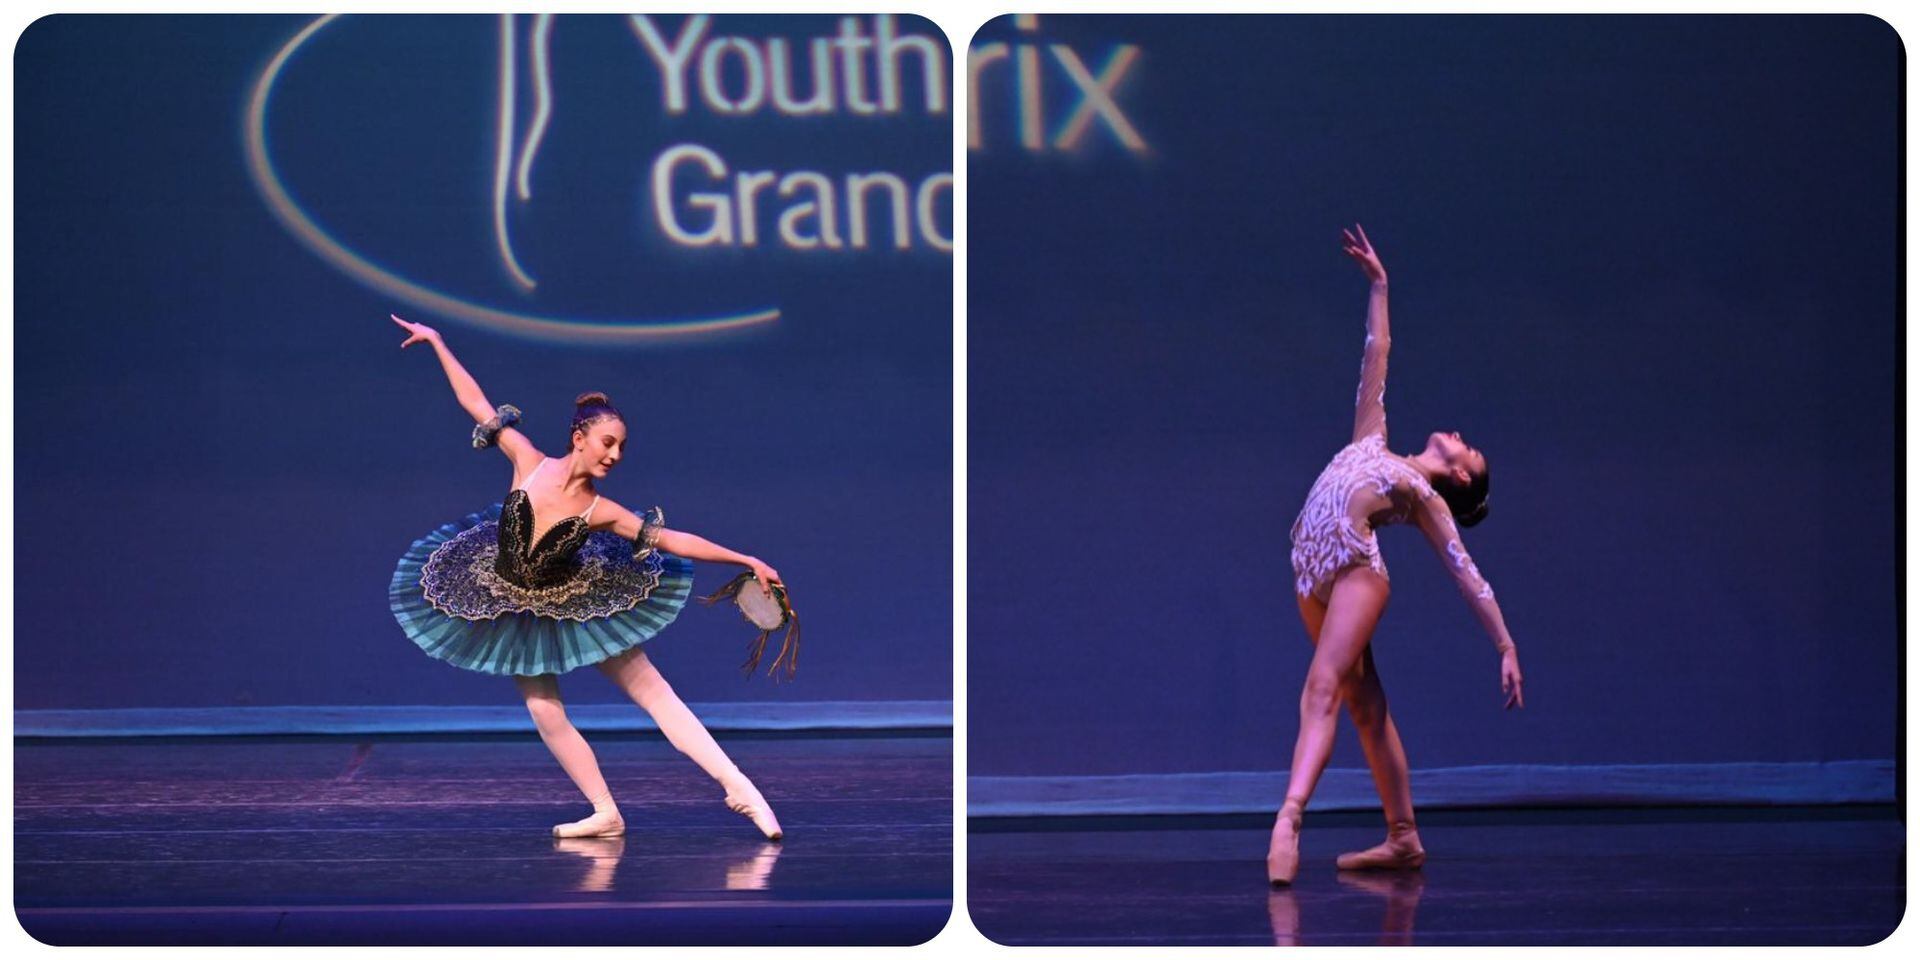 Mágico!: dos jóvenes triunfan en el ballet de Estados Unidos